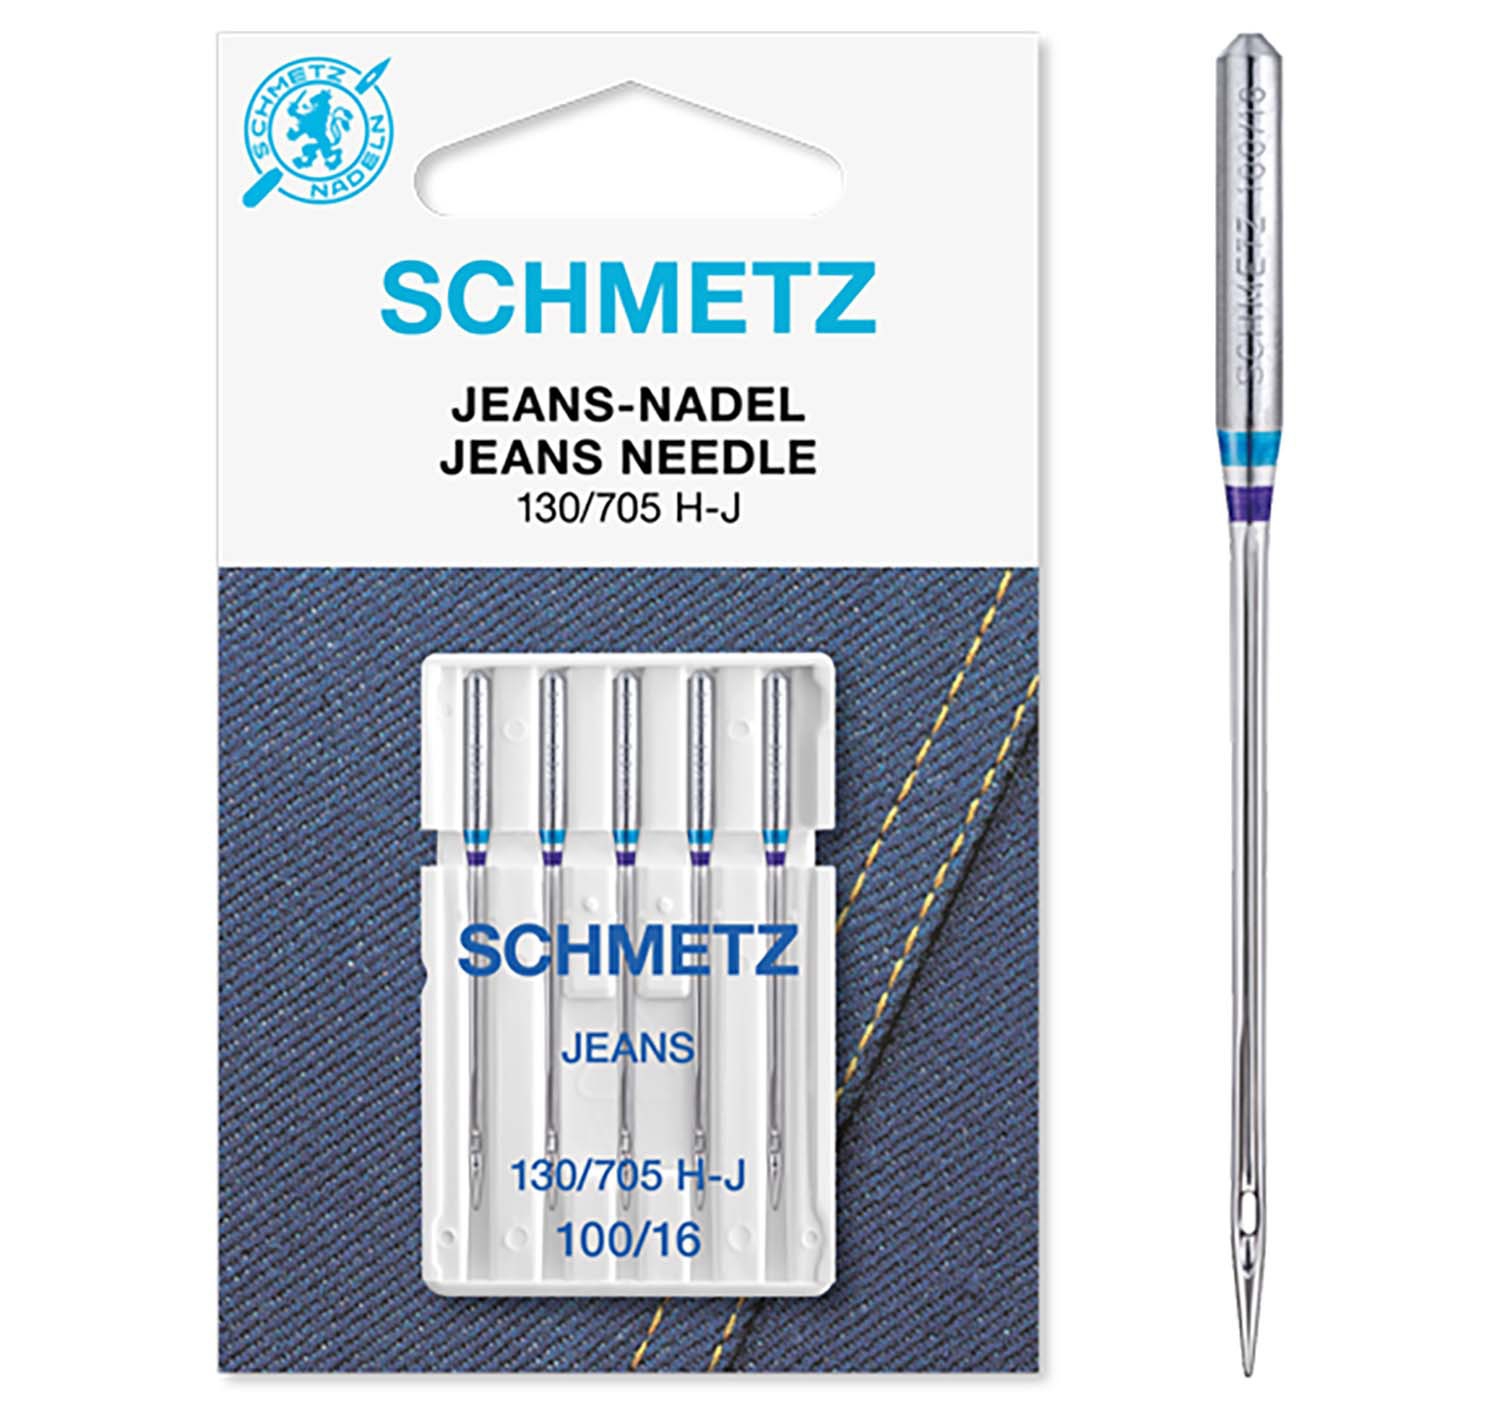 SCHMETZ Nähmaschinennadeln 5 Jeans-Nadeln 130/705 H-J 100/16